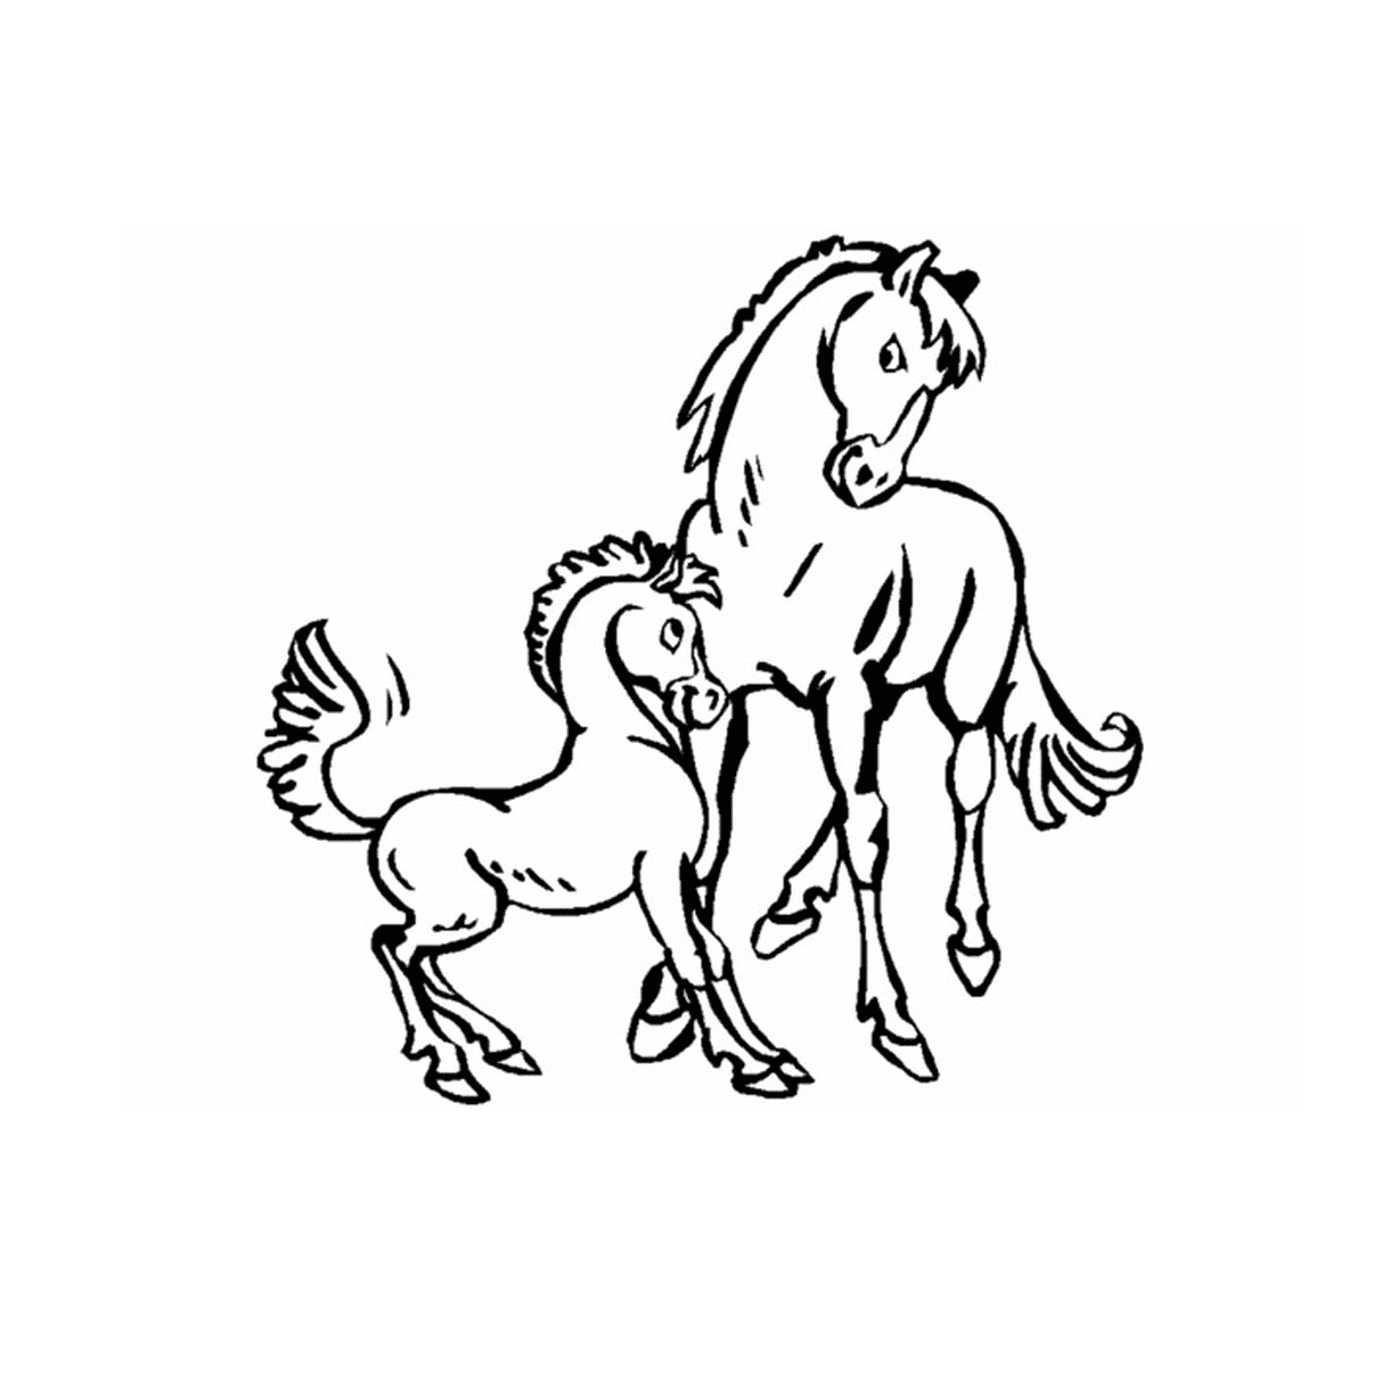  Pony e cavalli, tenero legame familiare 